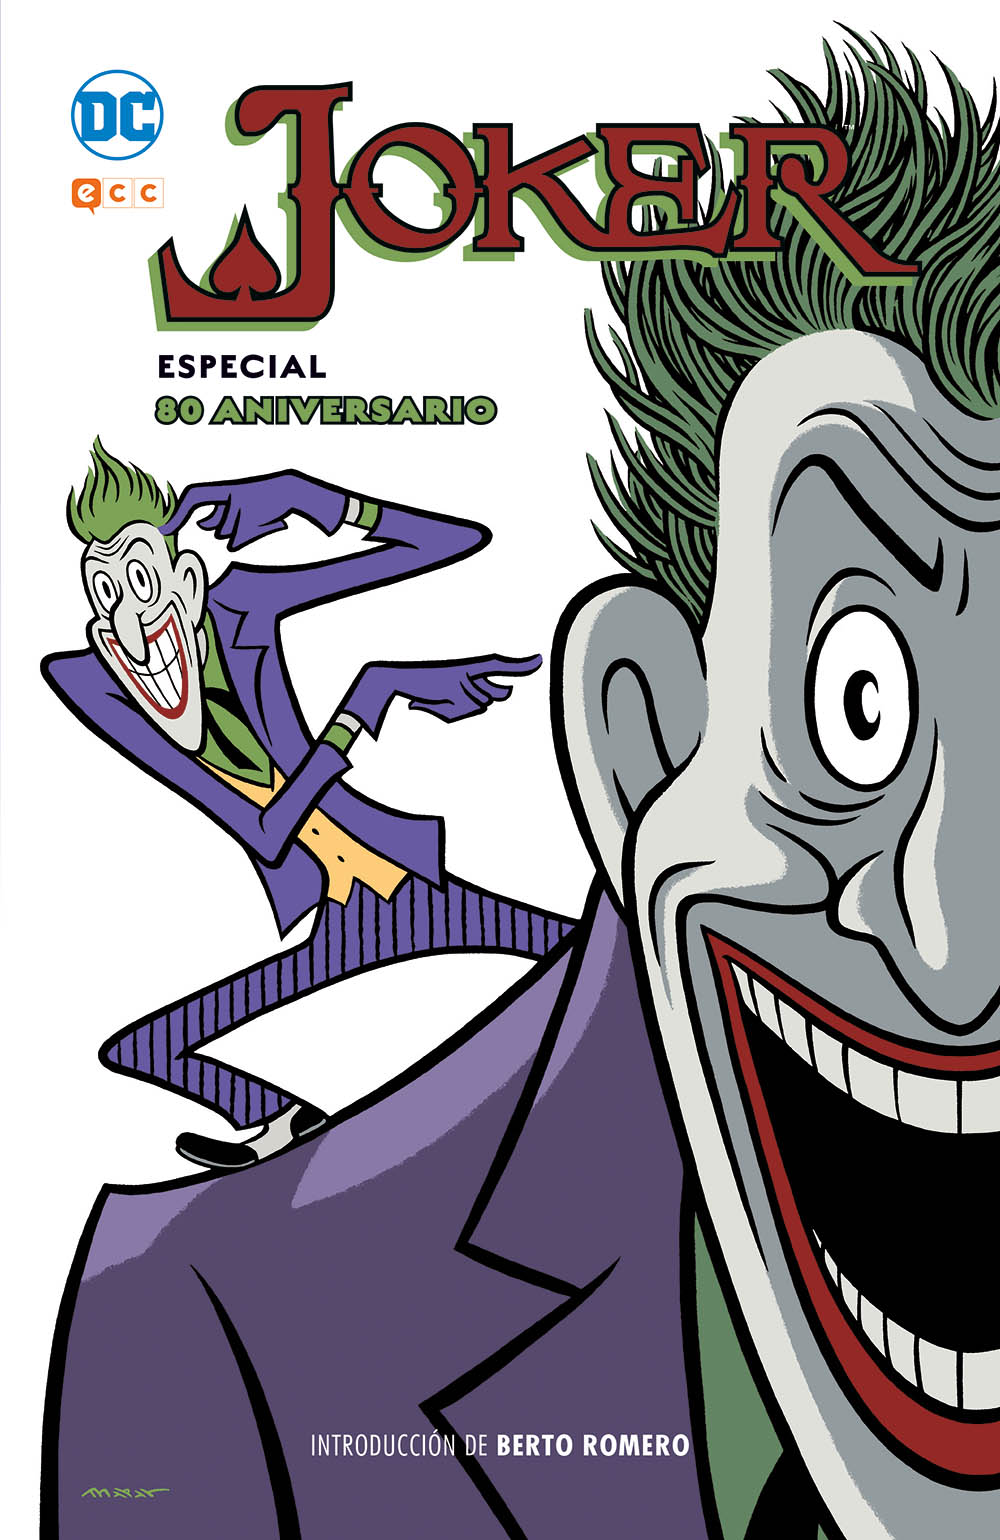 ECC celebra el 80 aniversario del Joker